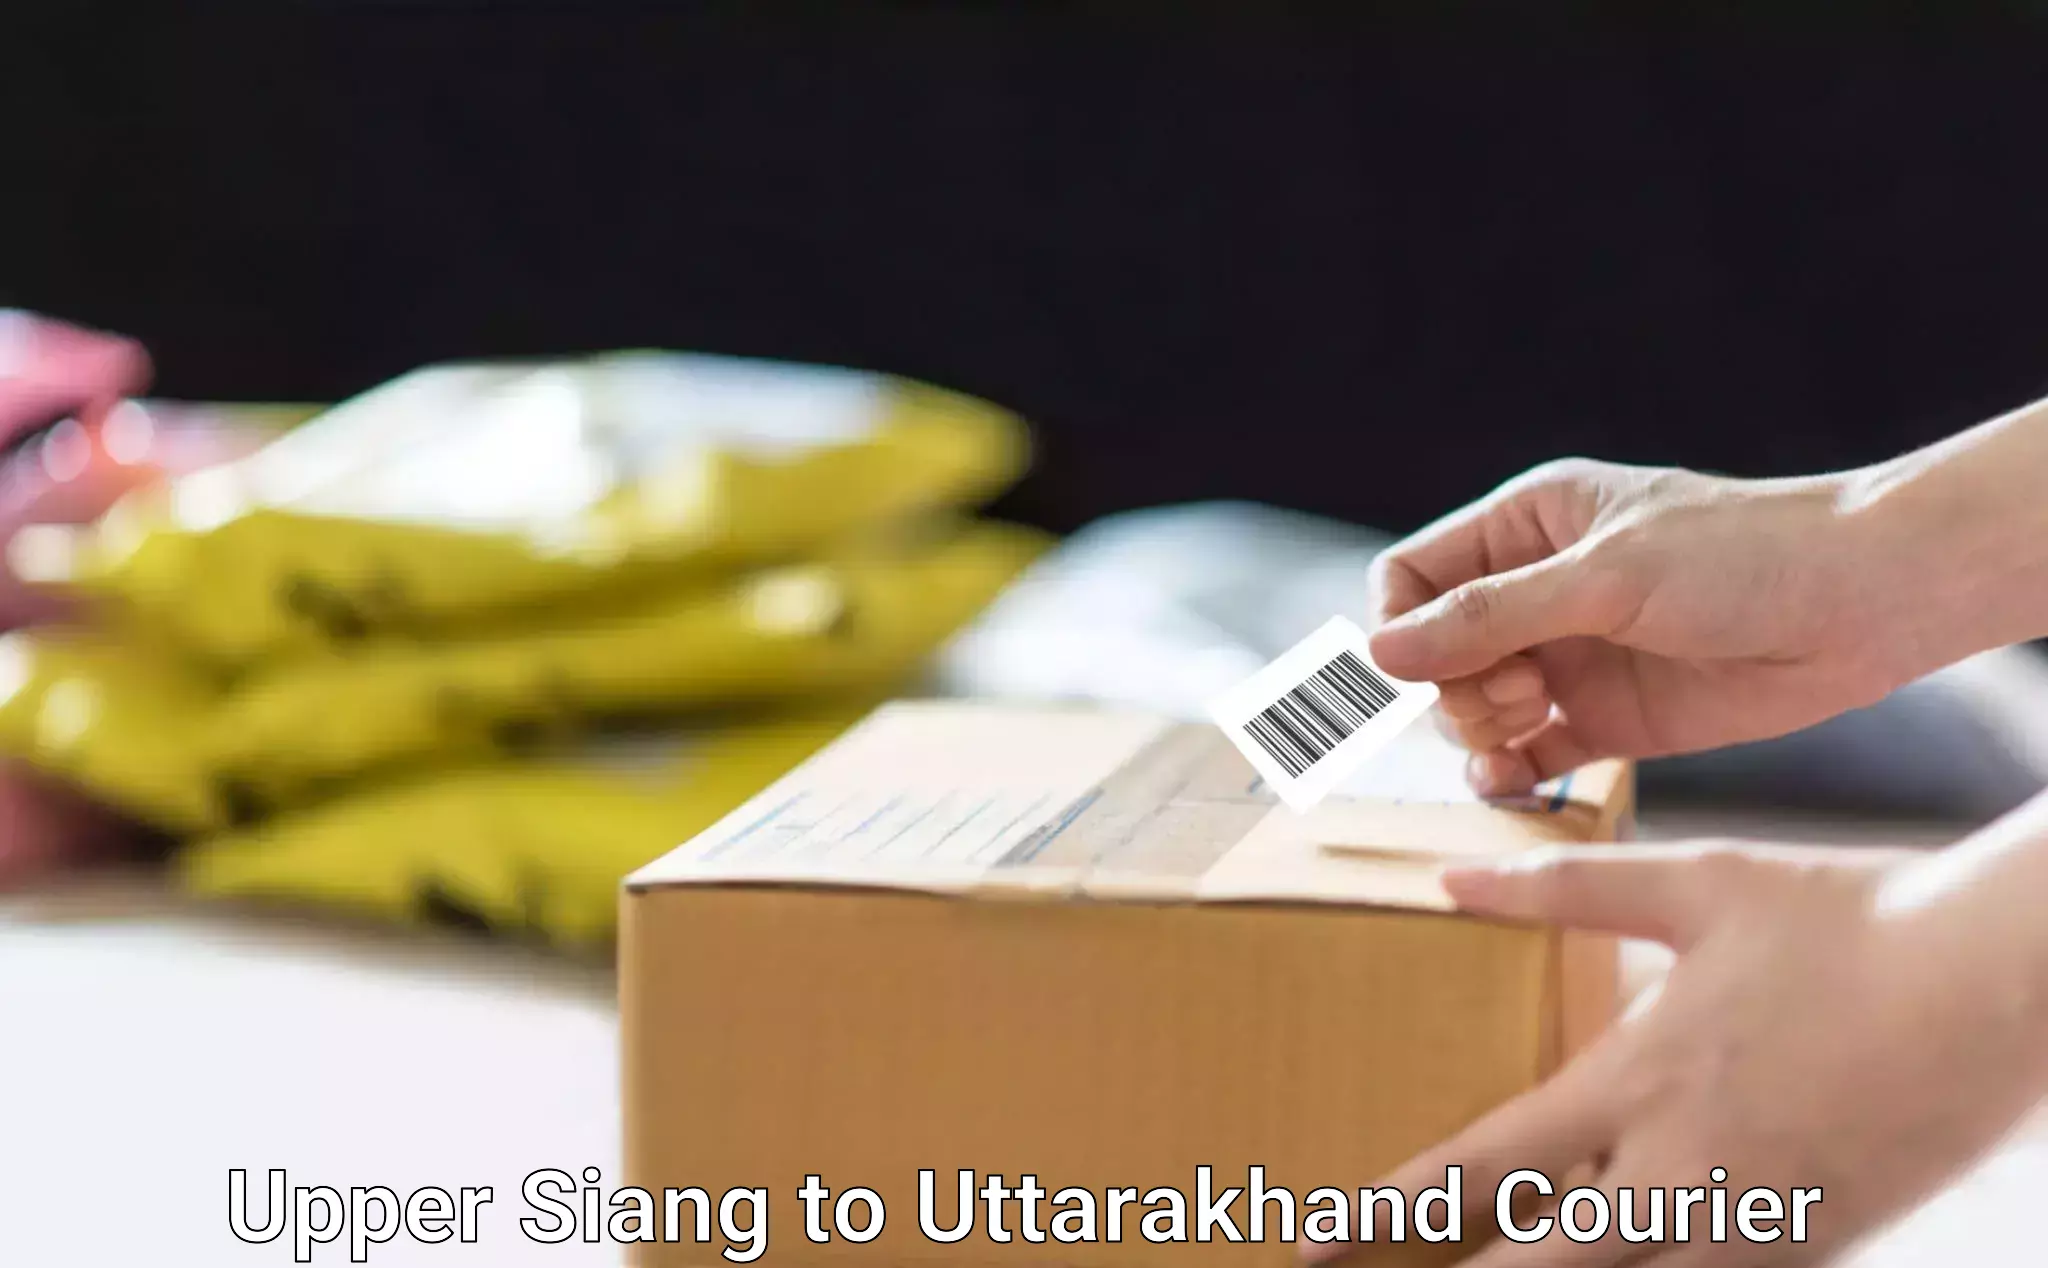 Customer-focused courier Upper Siang to Uttarakhand